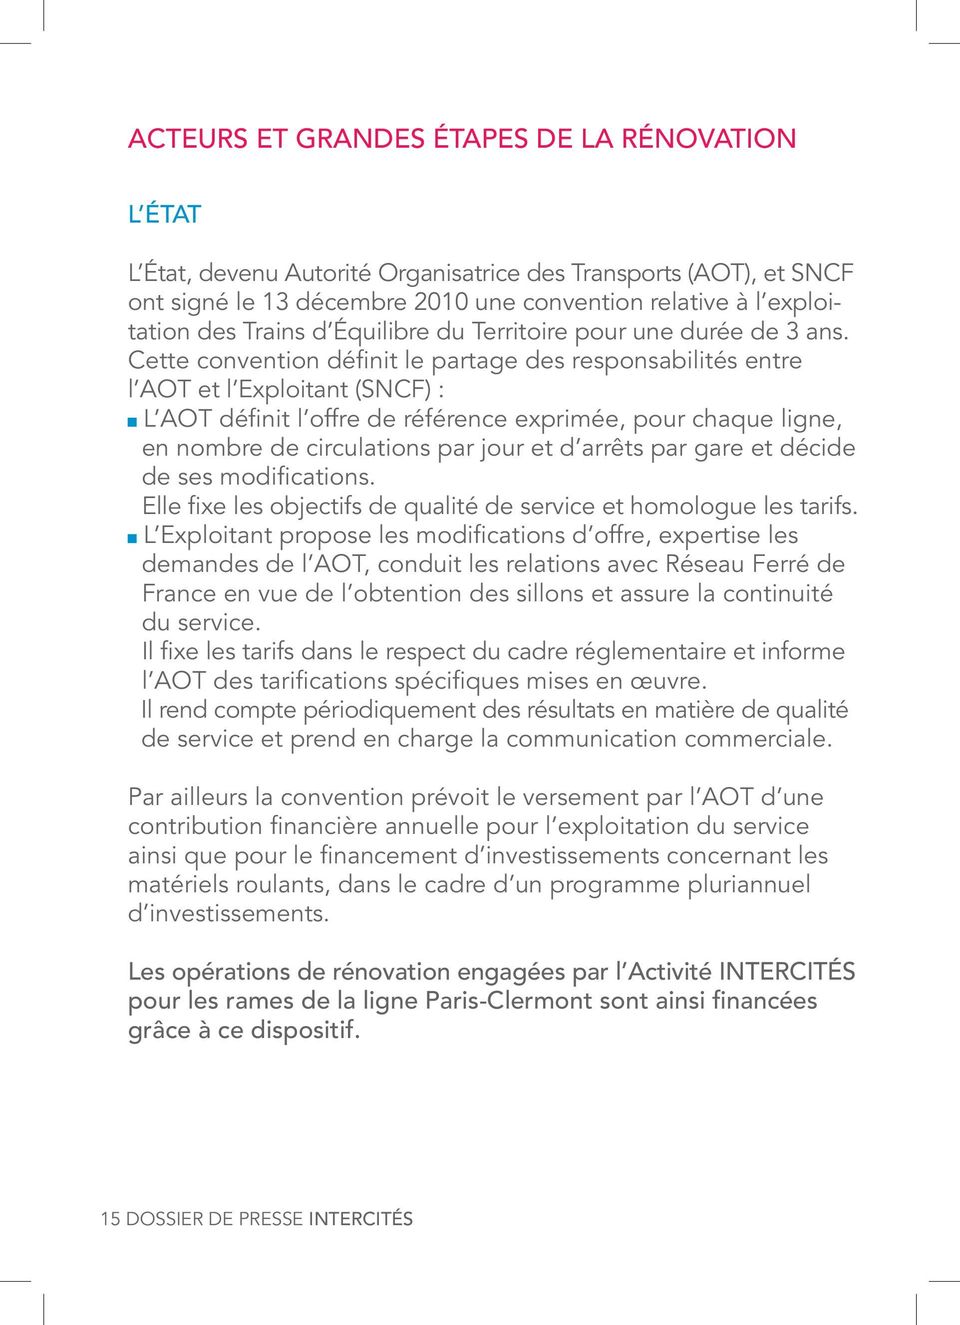 Cette convention définit le partage des responsabilités entre l AOT et l Exploitant (SNCF) : L AOT définit l offre de référence exprimée, pour chaque ligne, en nombre de circulations par jour et d